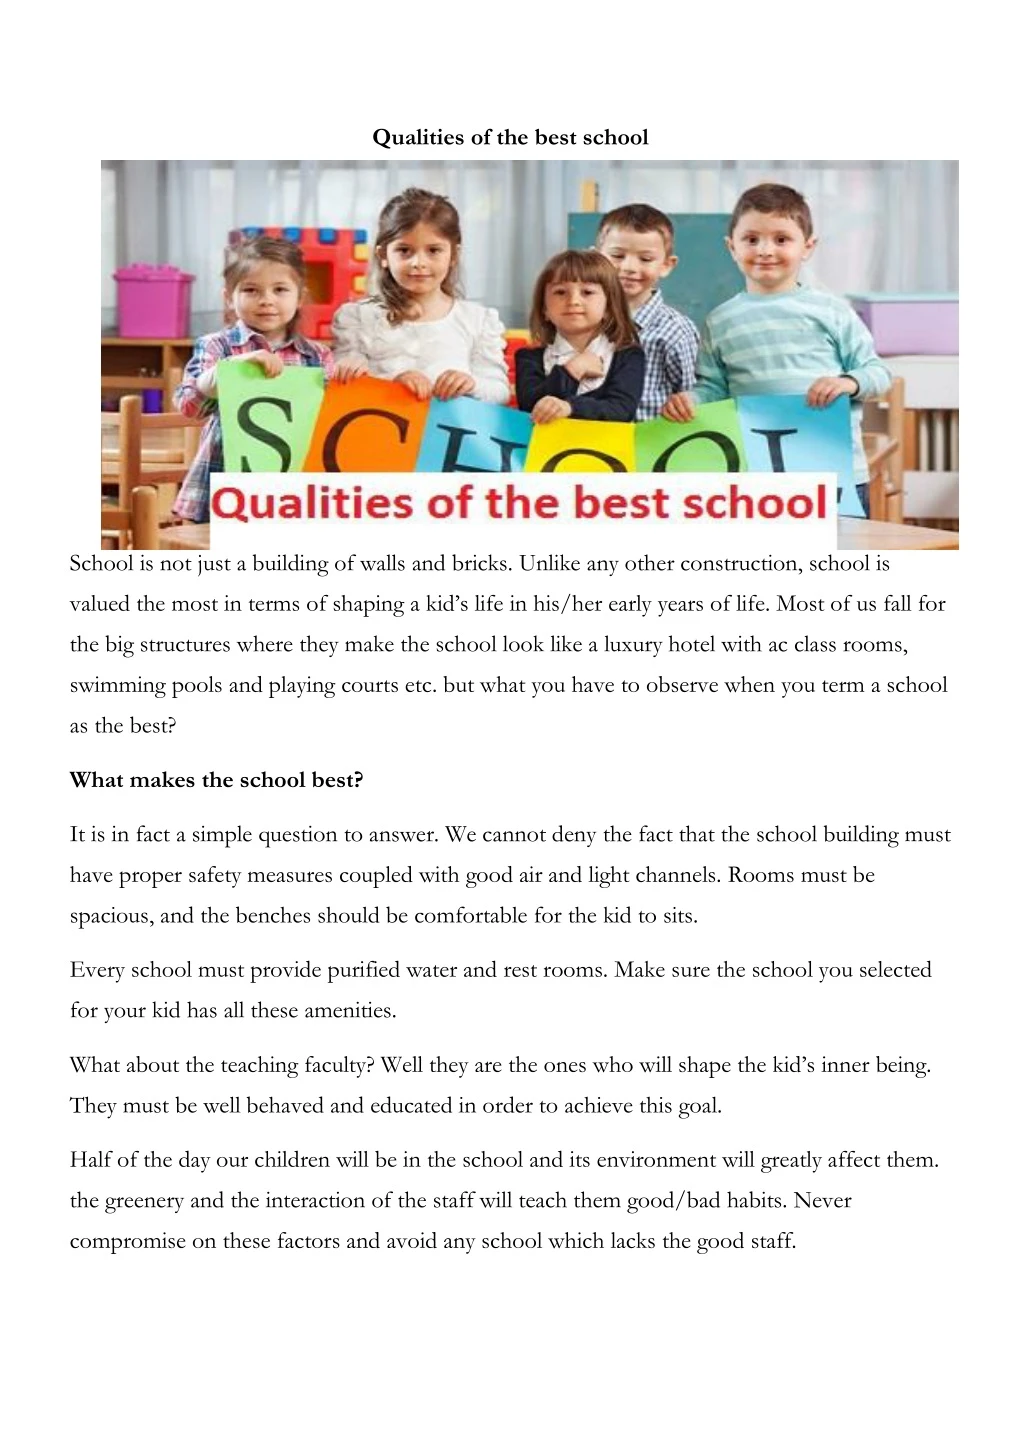 qualities of the best school